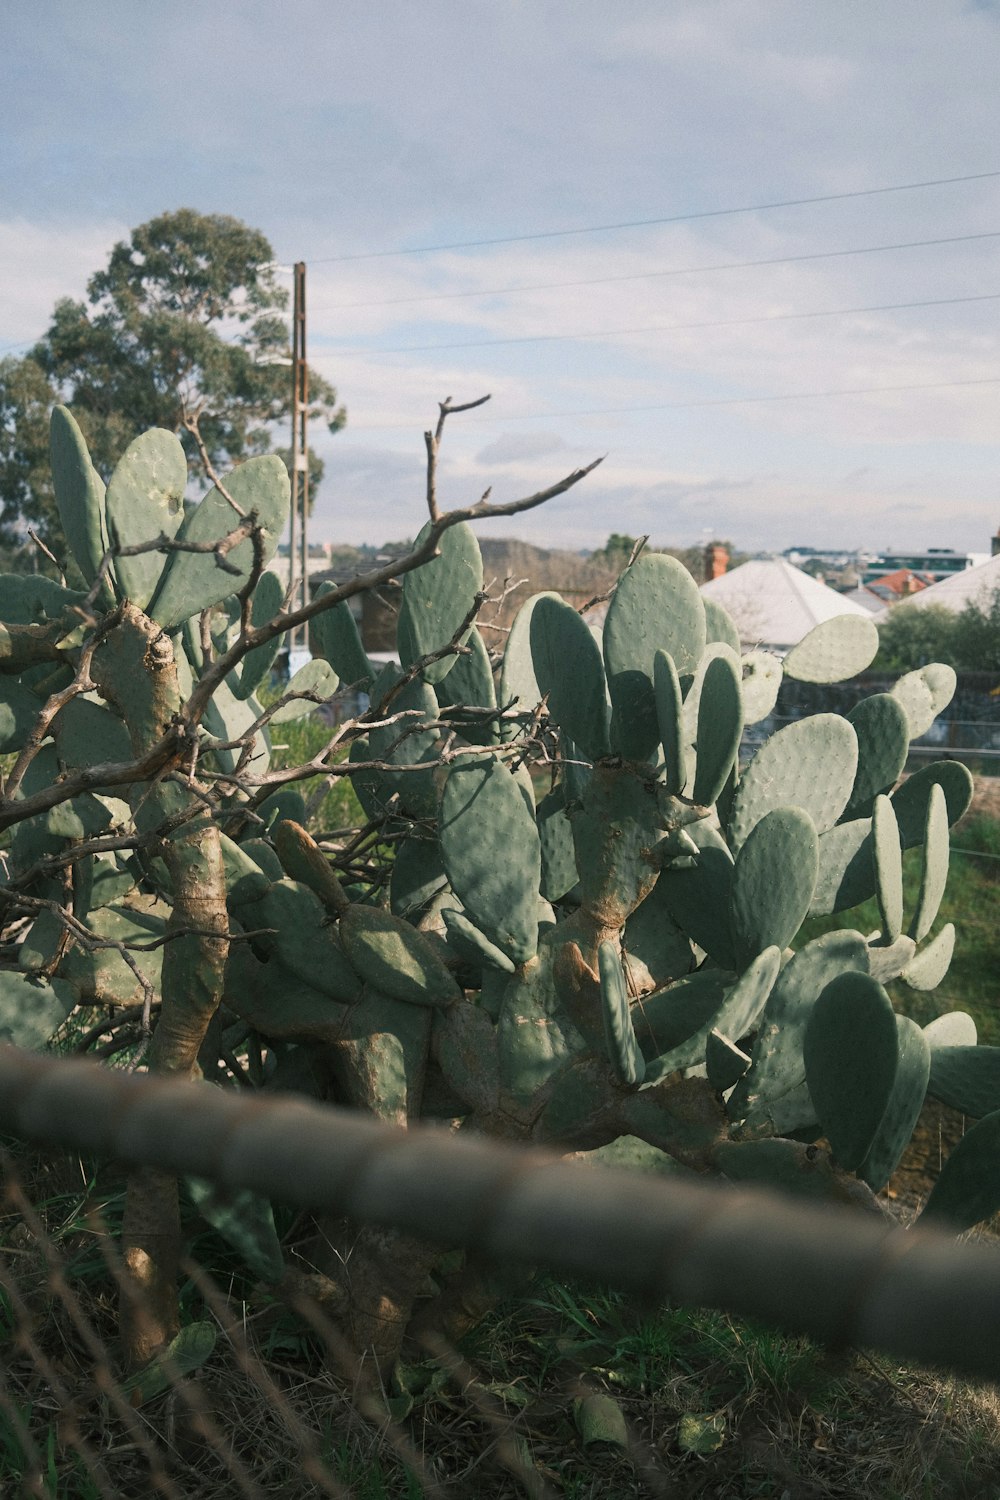 a cactus in a field